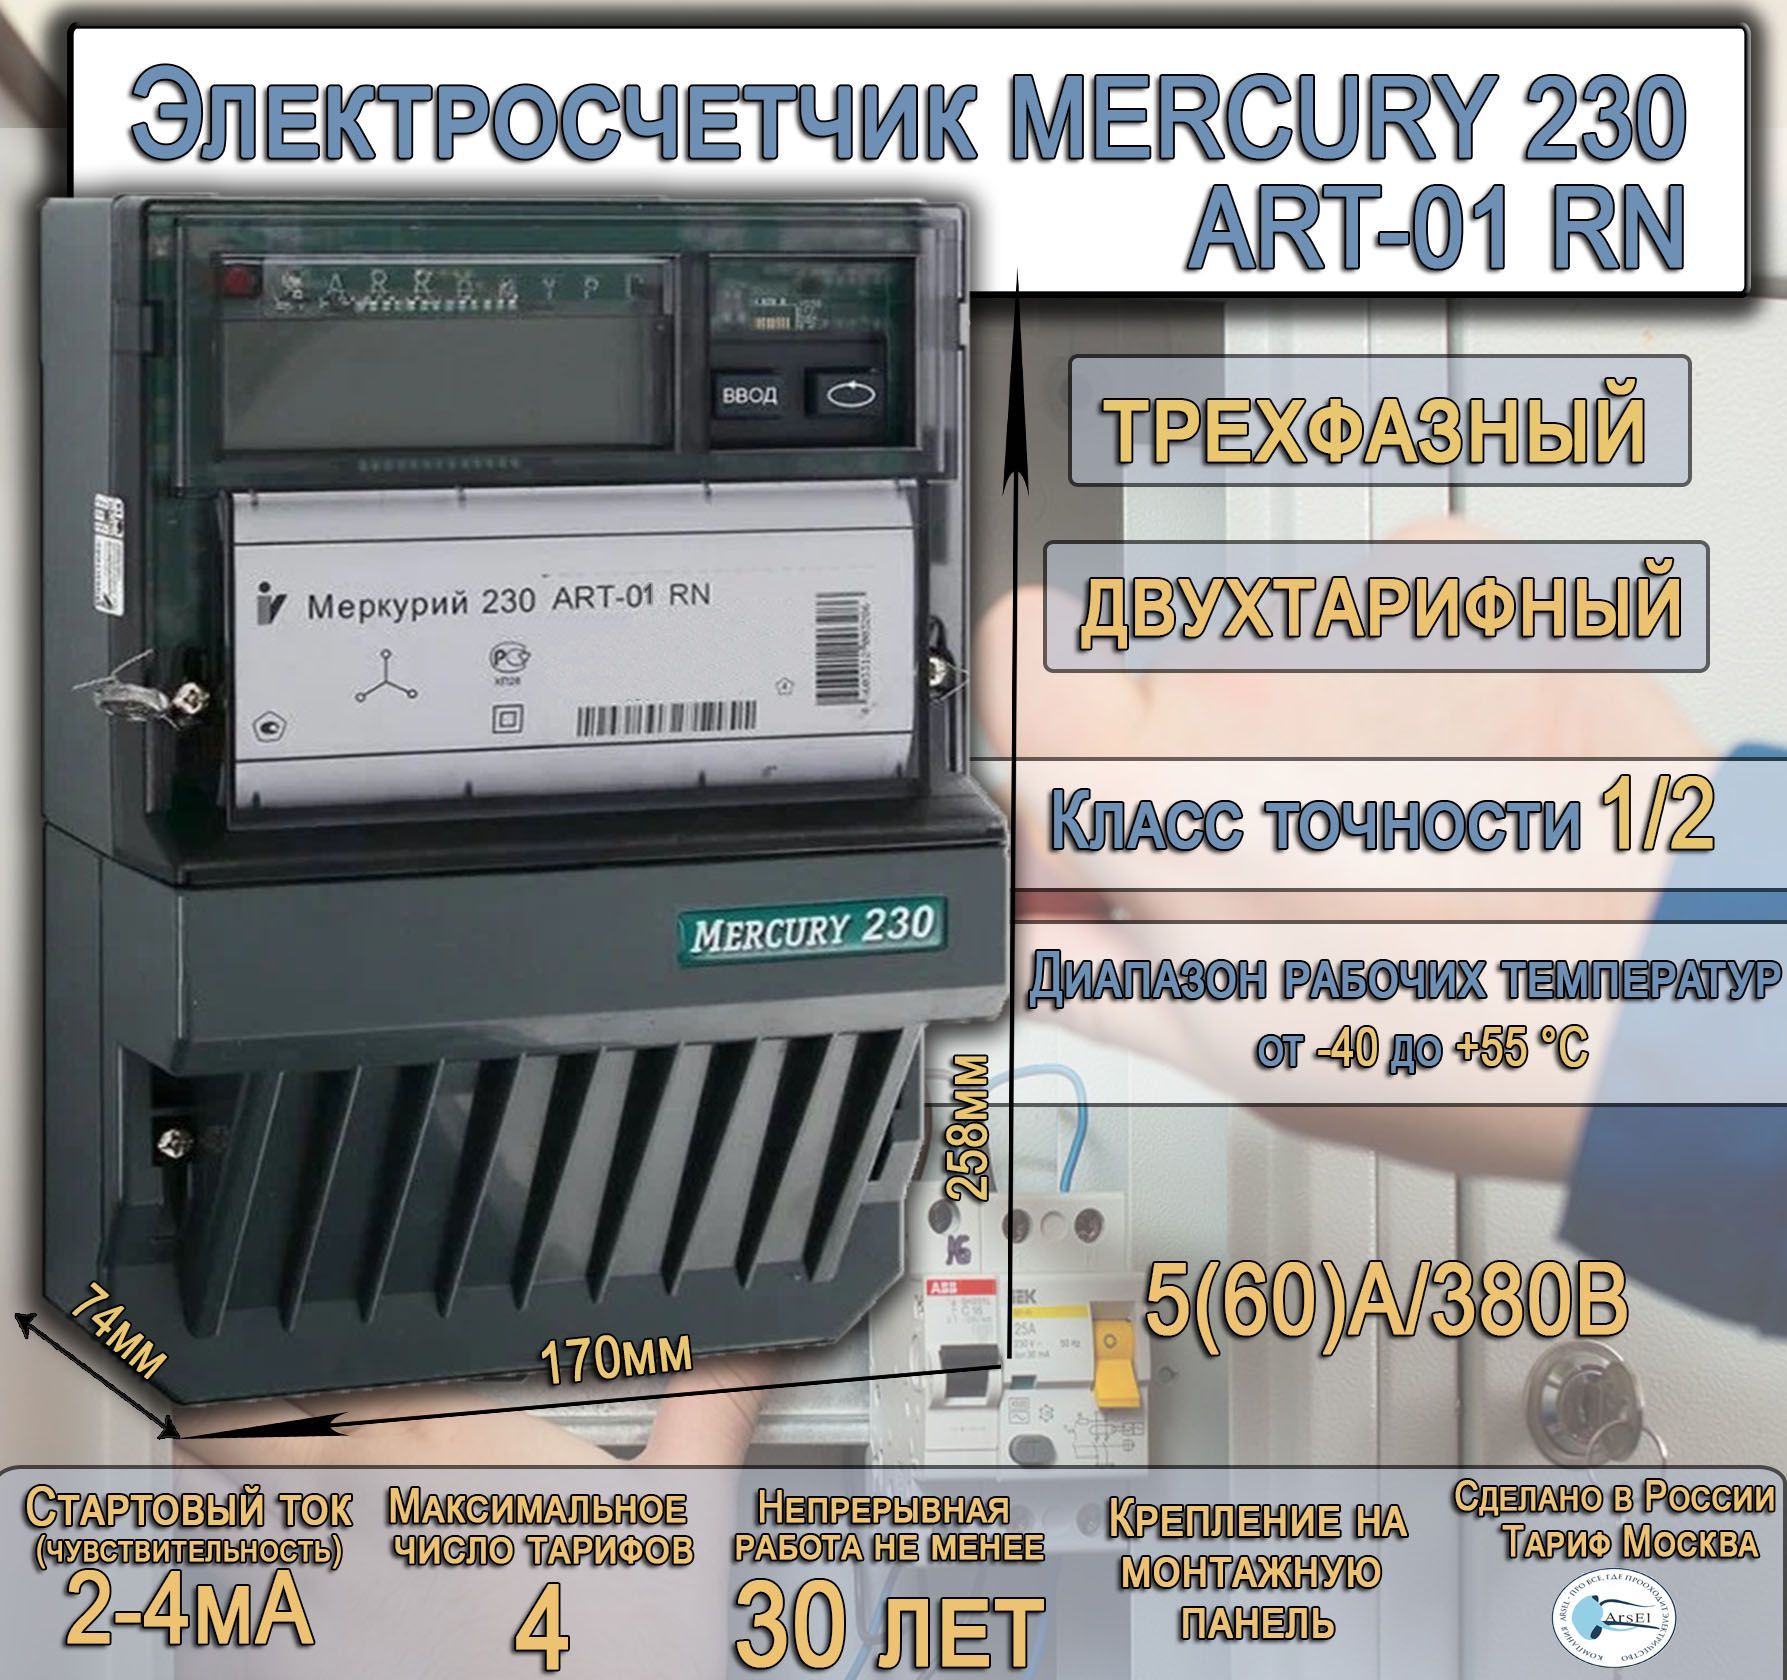 Многотарифные счетчики электроэнергии меркурий. Характеристики электроэнергии. Incotex Меркурий 230 АR-02 R 10(100) А.